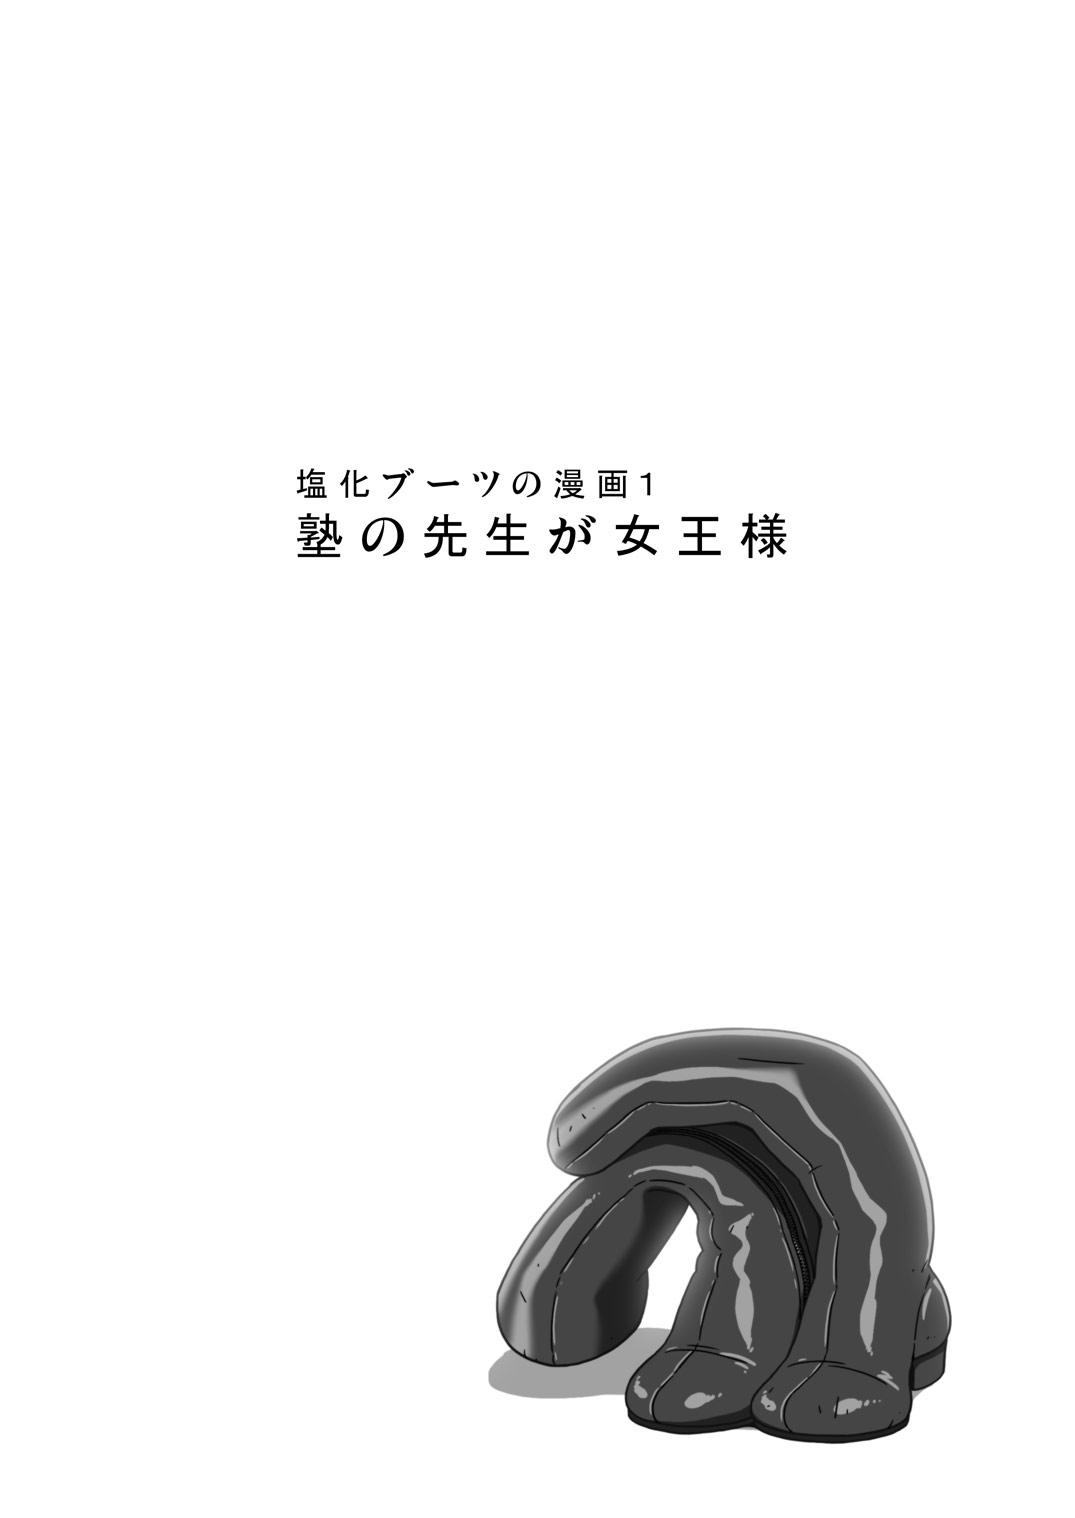 [Enka Boots] Enka Boots no Manga 1 - Juku no Sensei ga Joou-sama V2.0 3